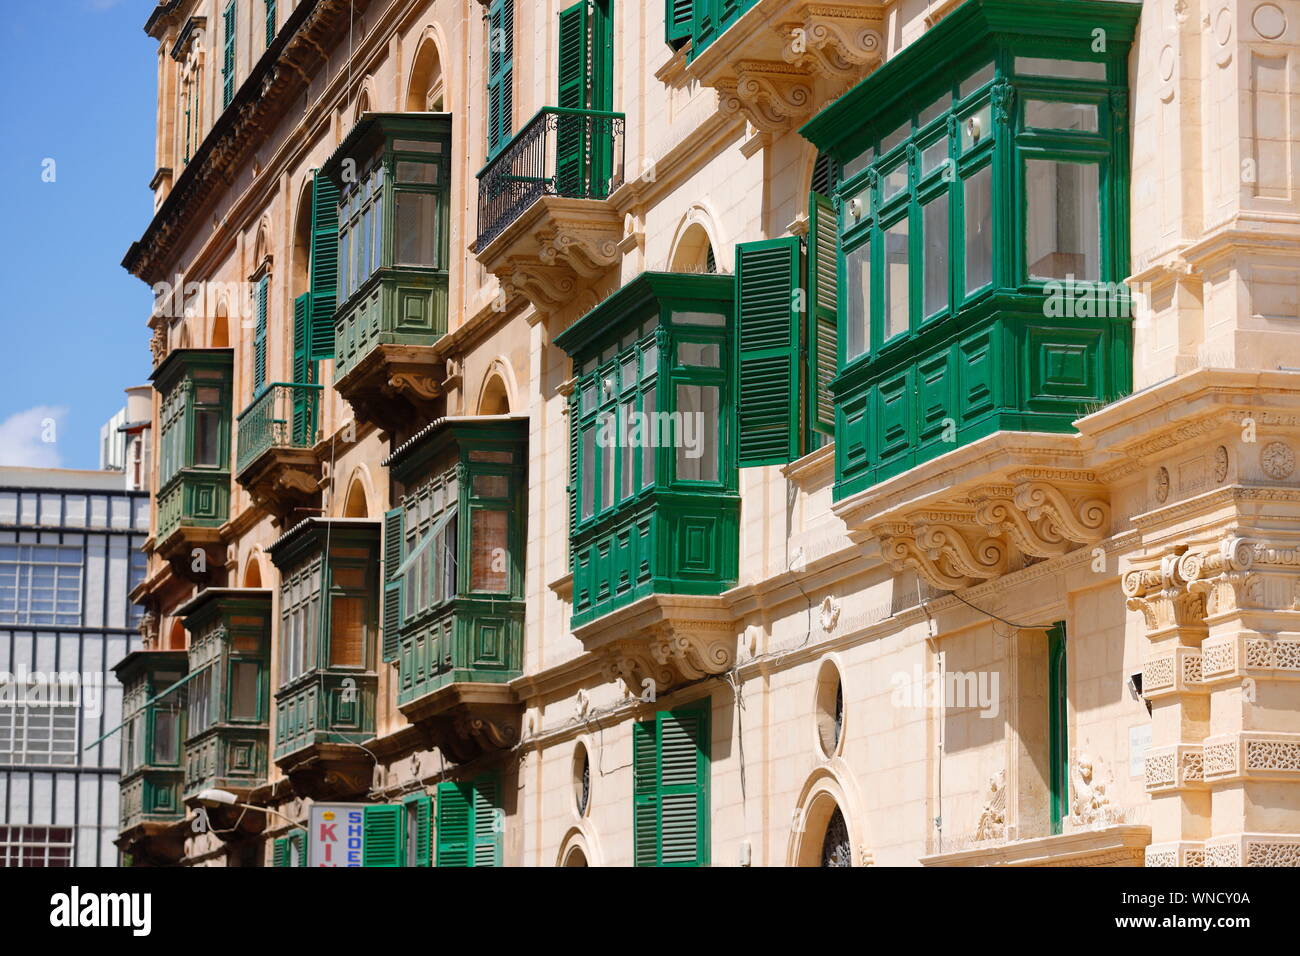 A street in the city of Valletta, Malta. Stock Photo